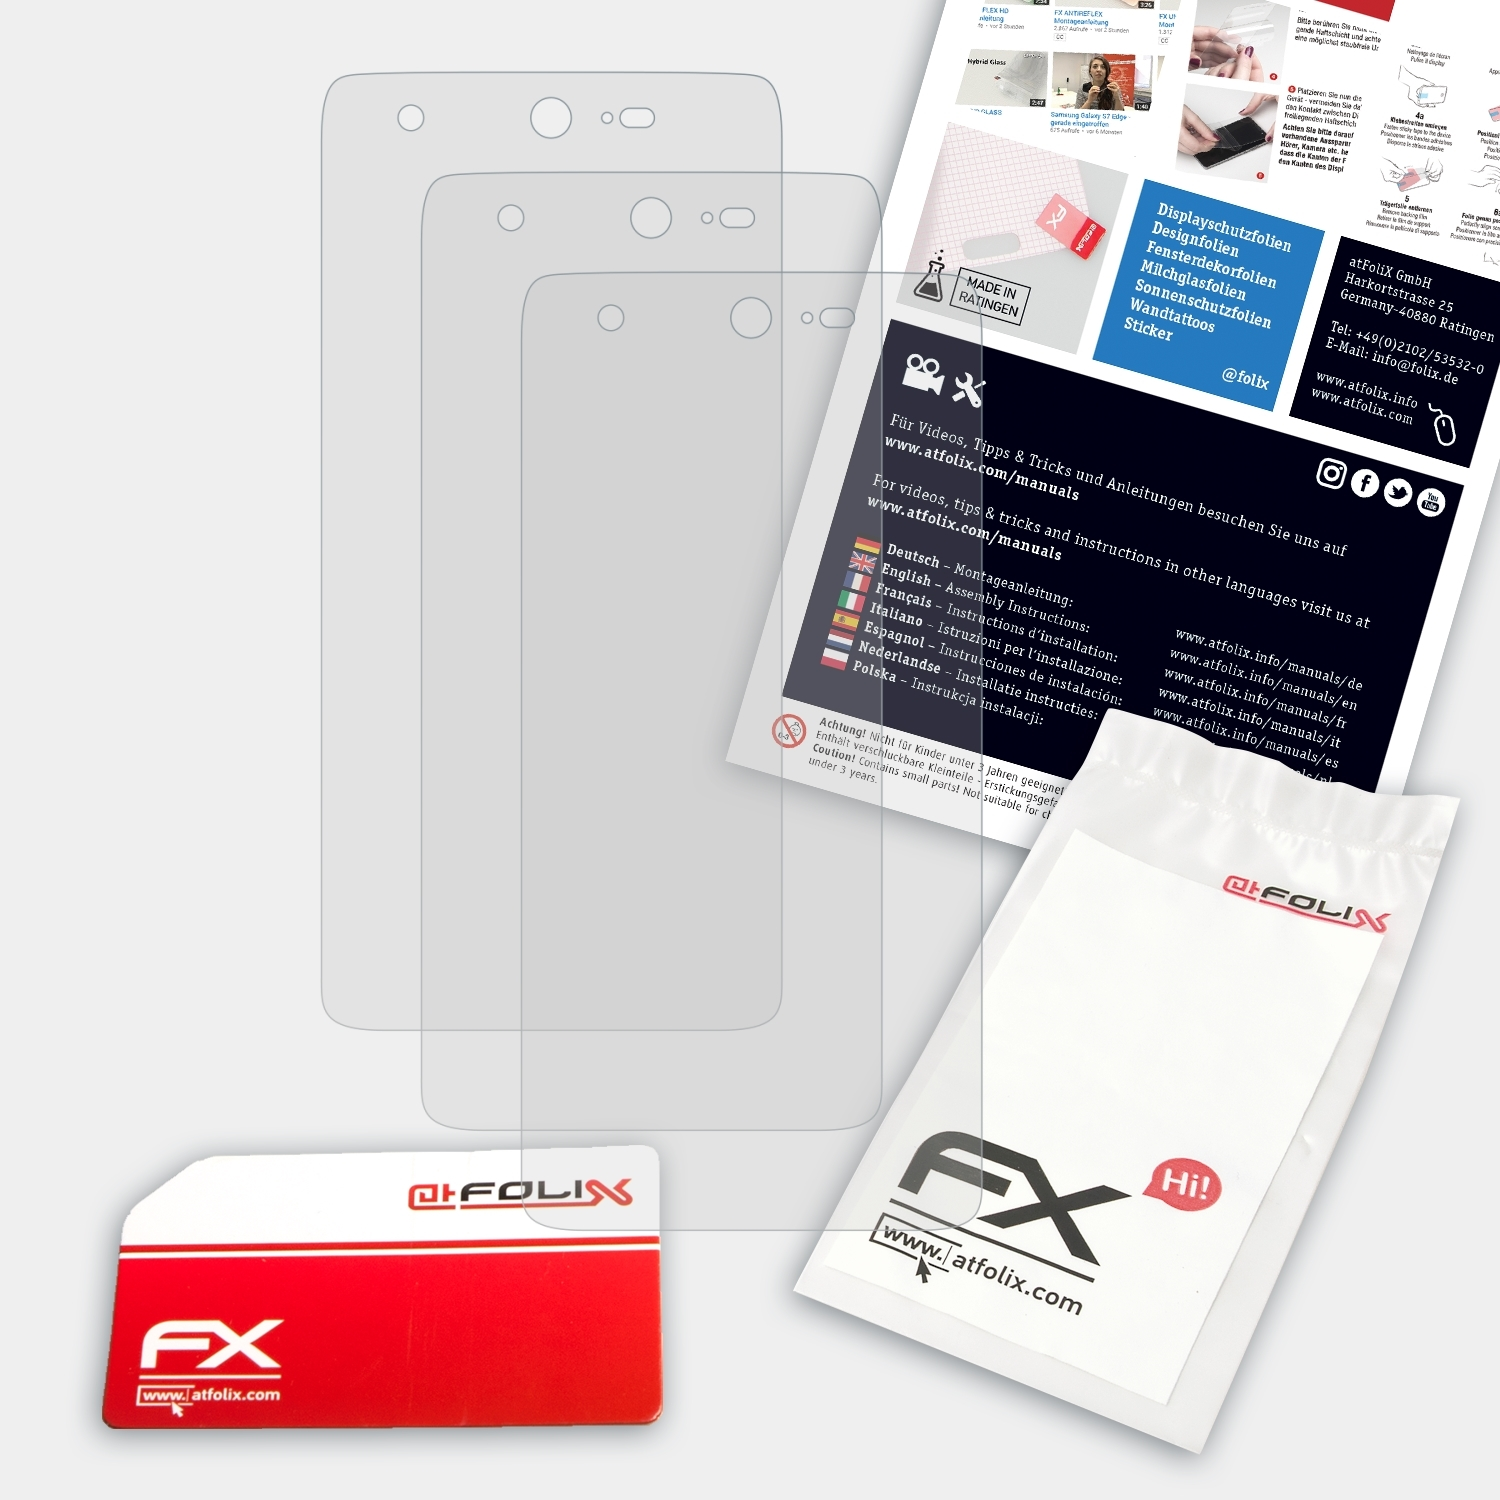 ATFOLIX 3x FX-Antireflex Displayschutz(für Sharp Z2)